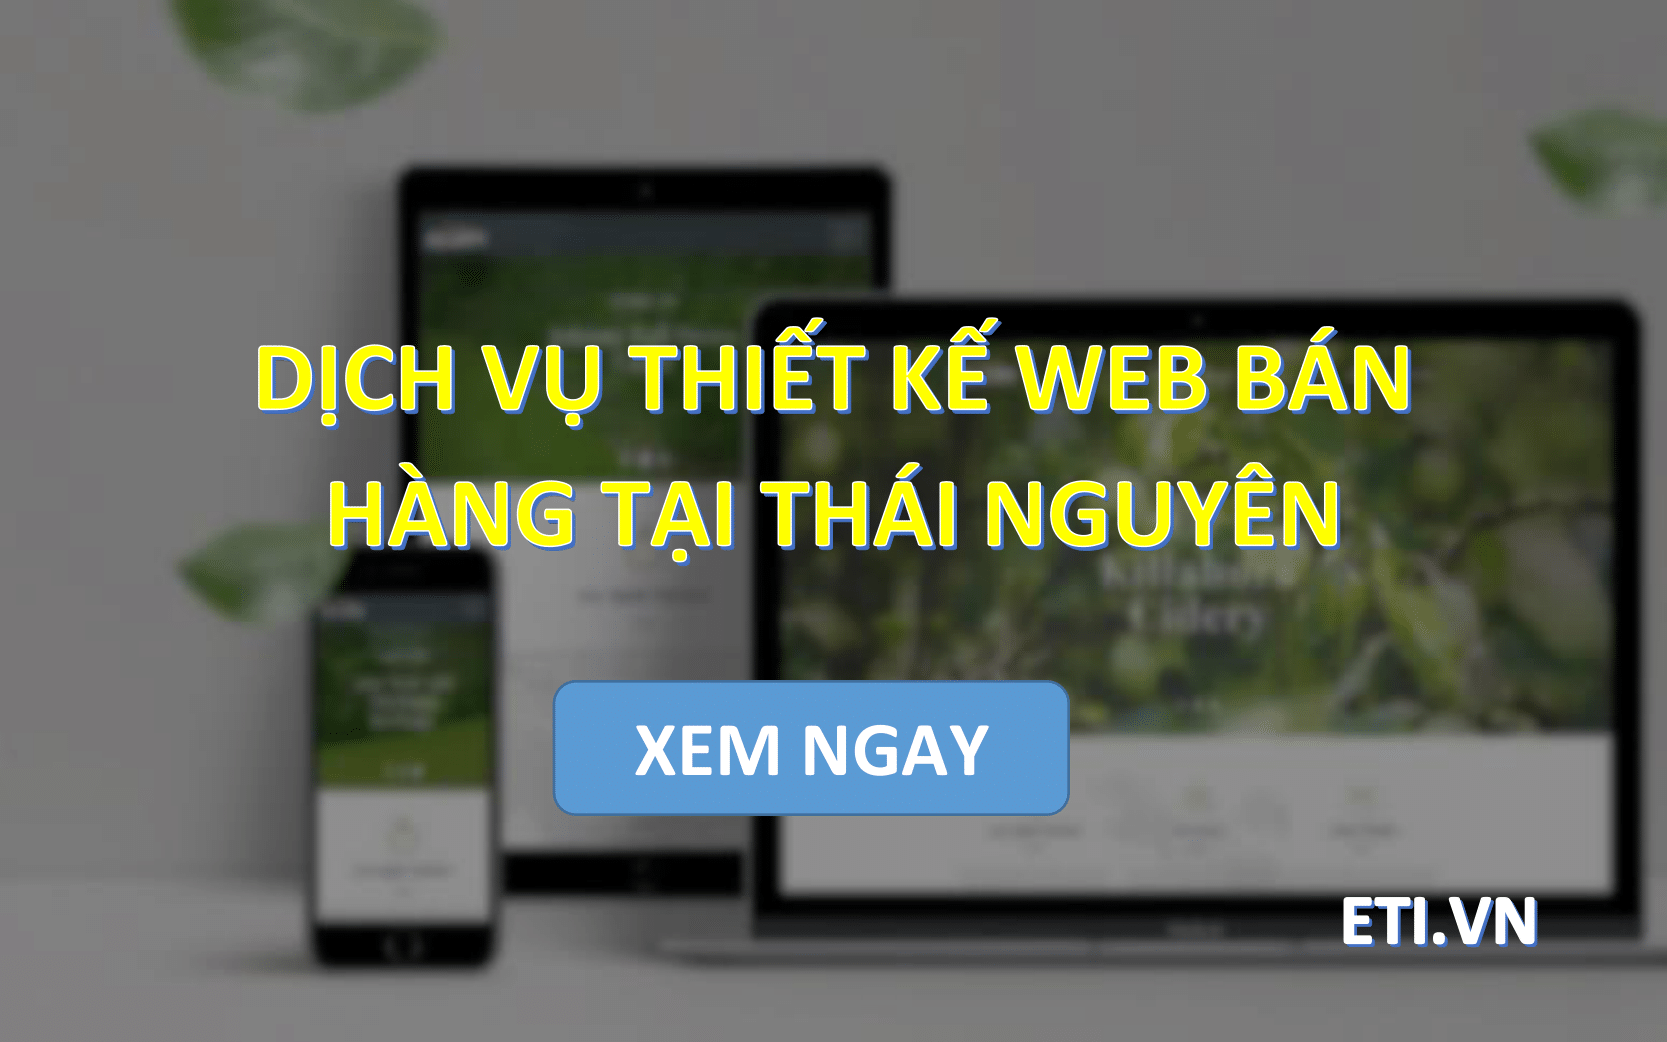 Dịch vụ Thiết kế web bán hàng tại Thái Nguyên